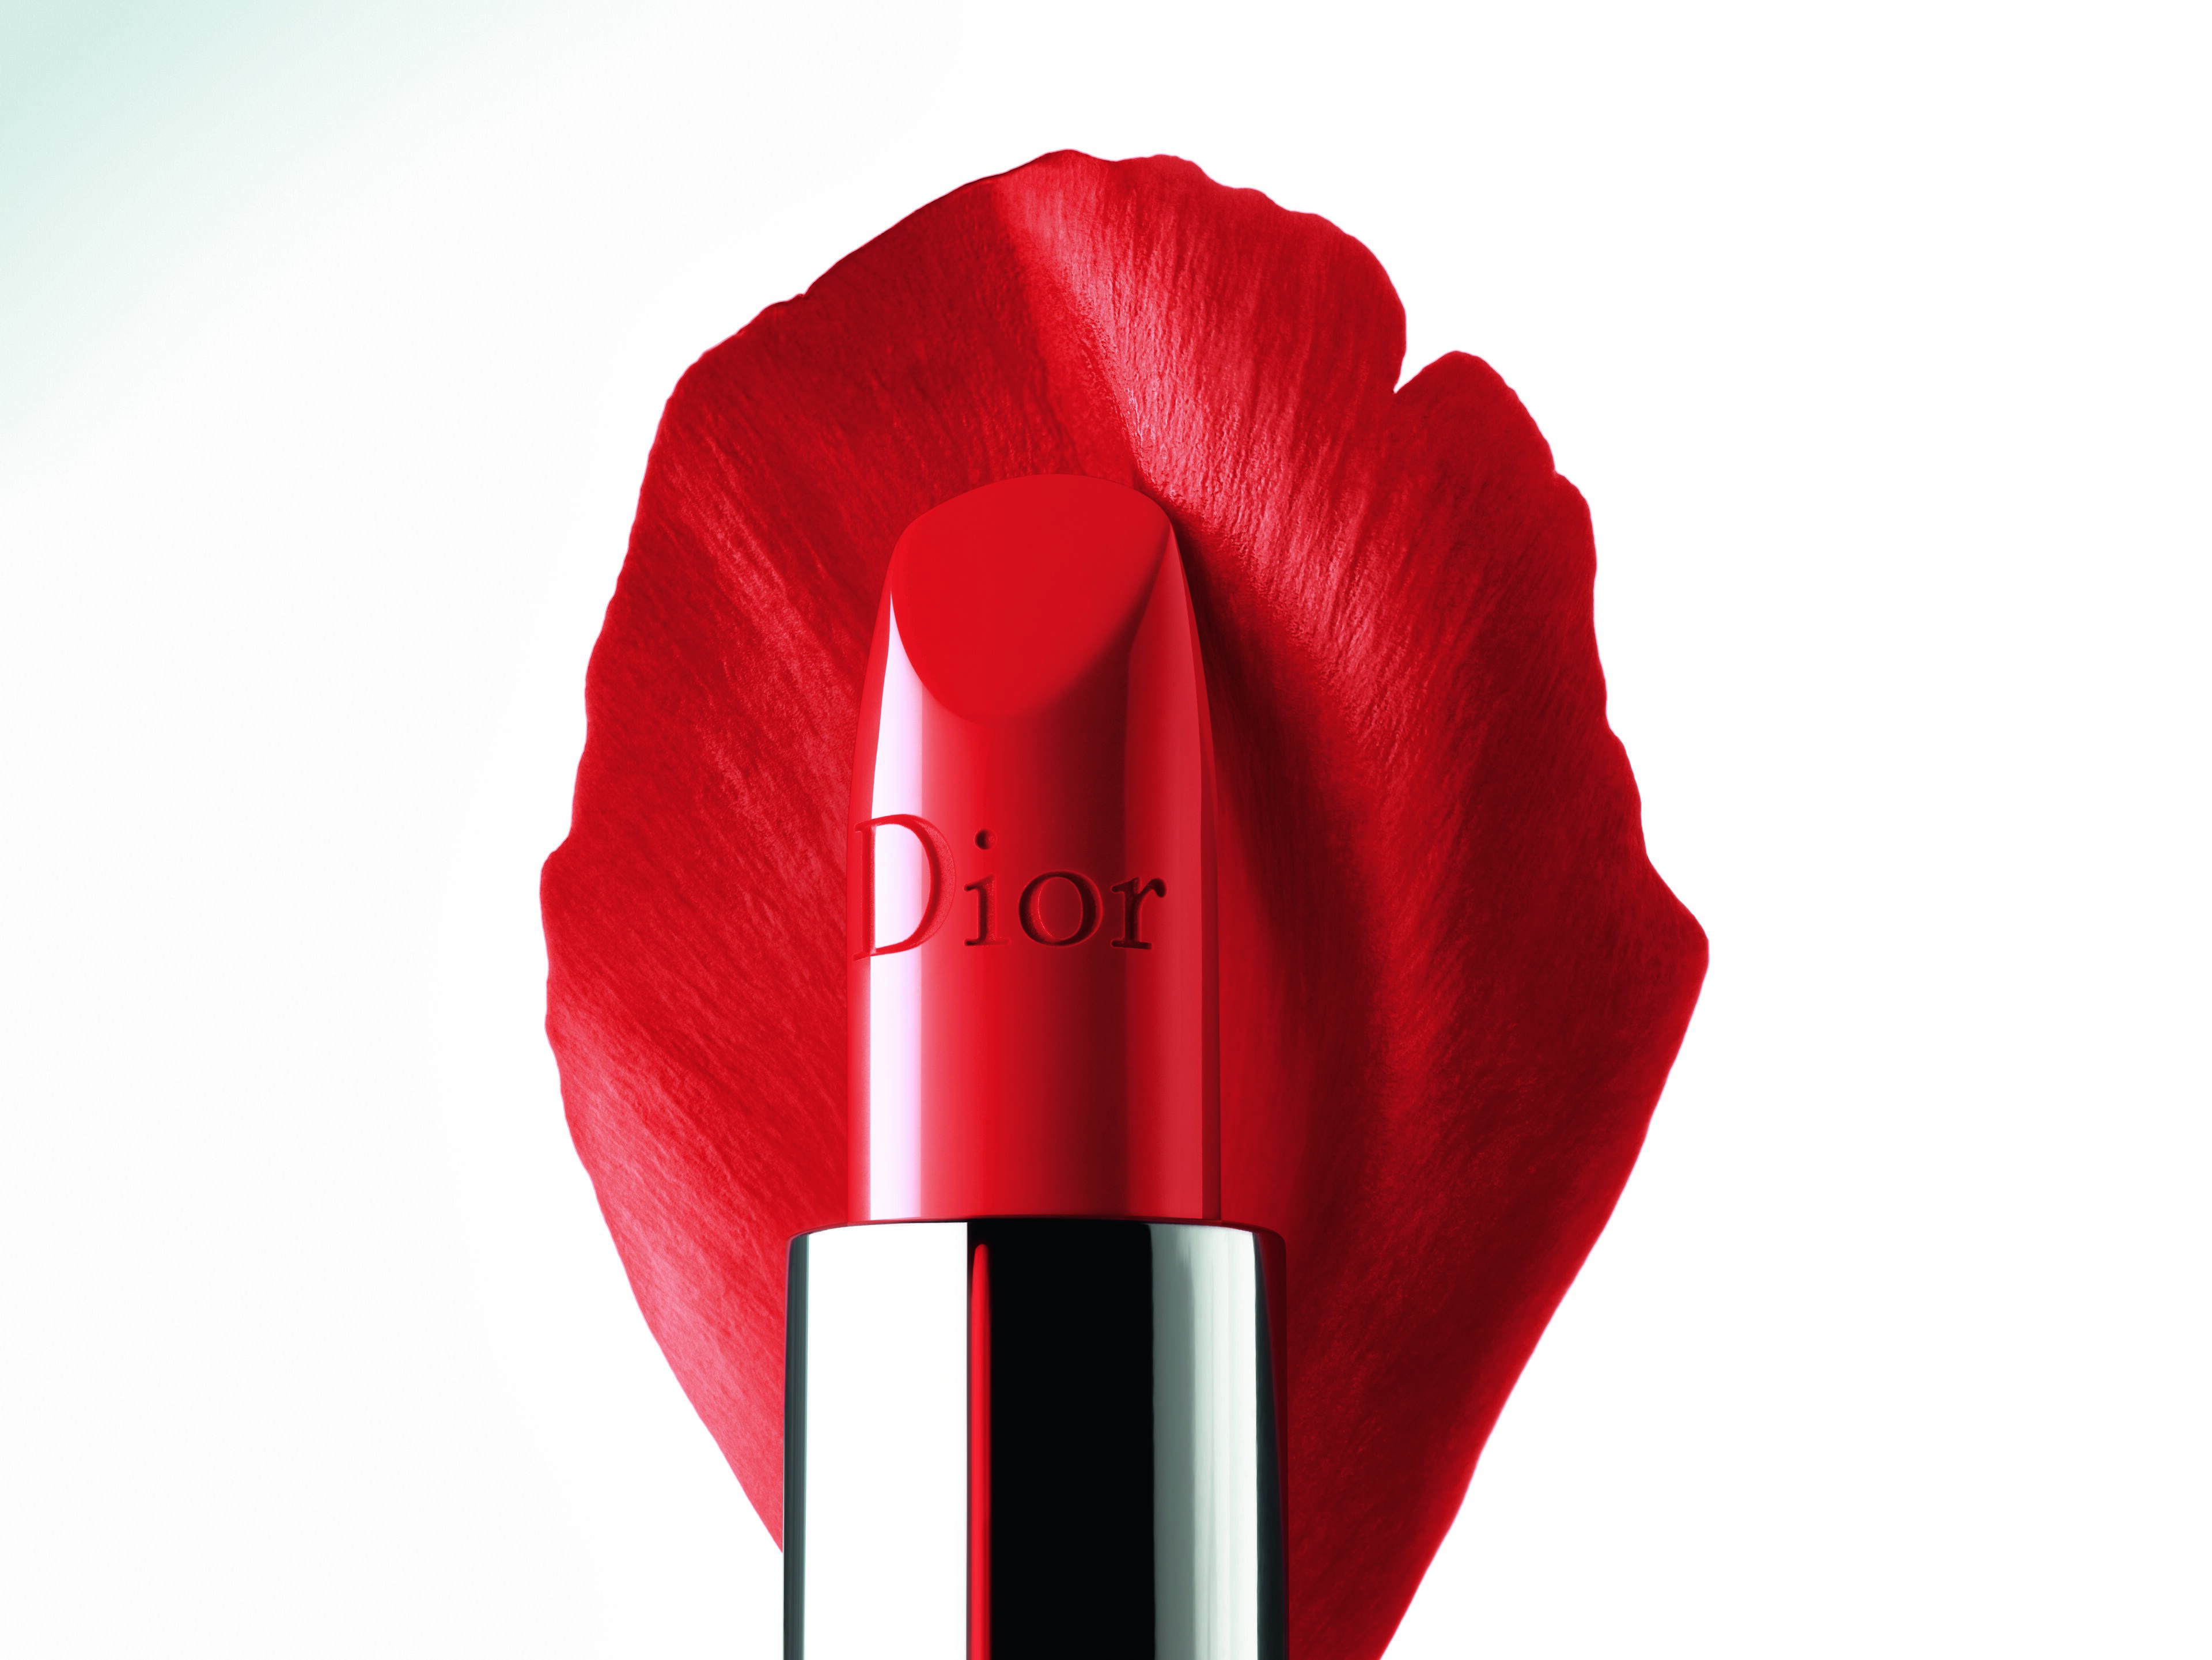 dior lipsticks